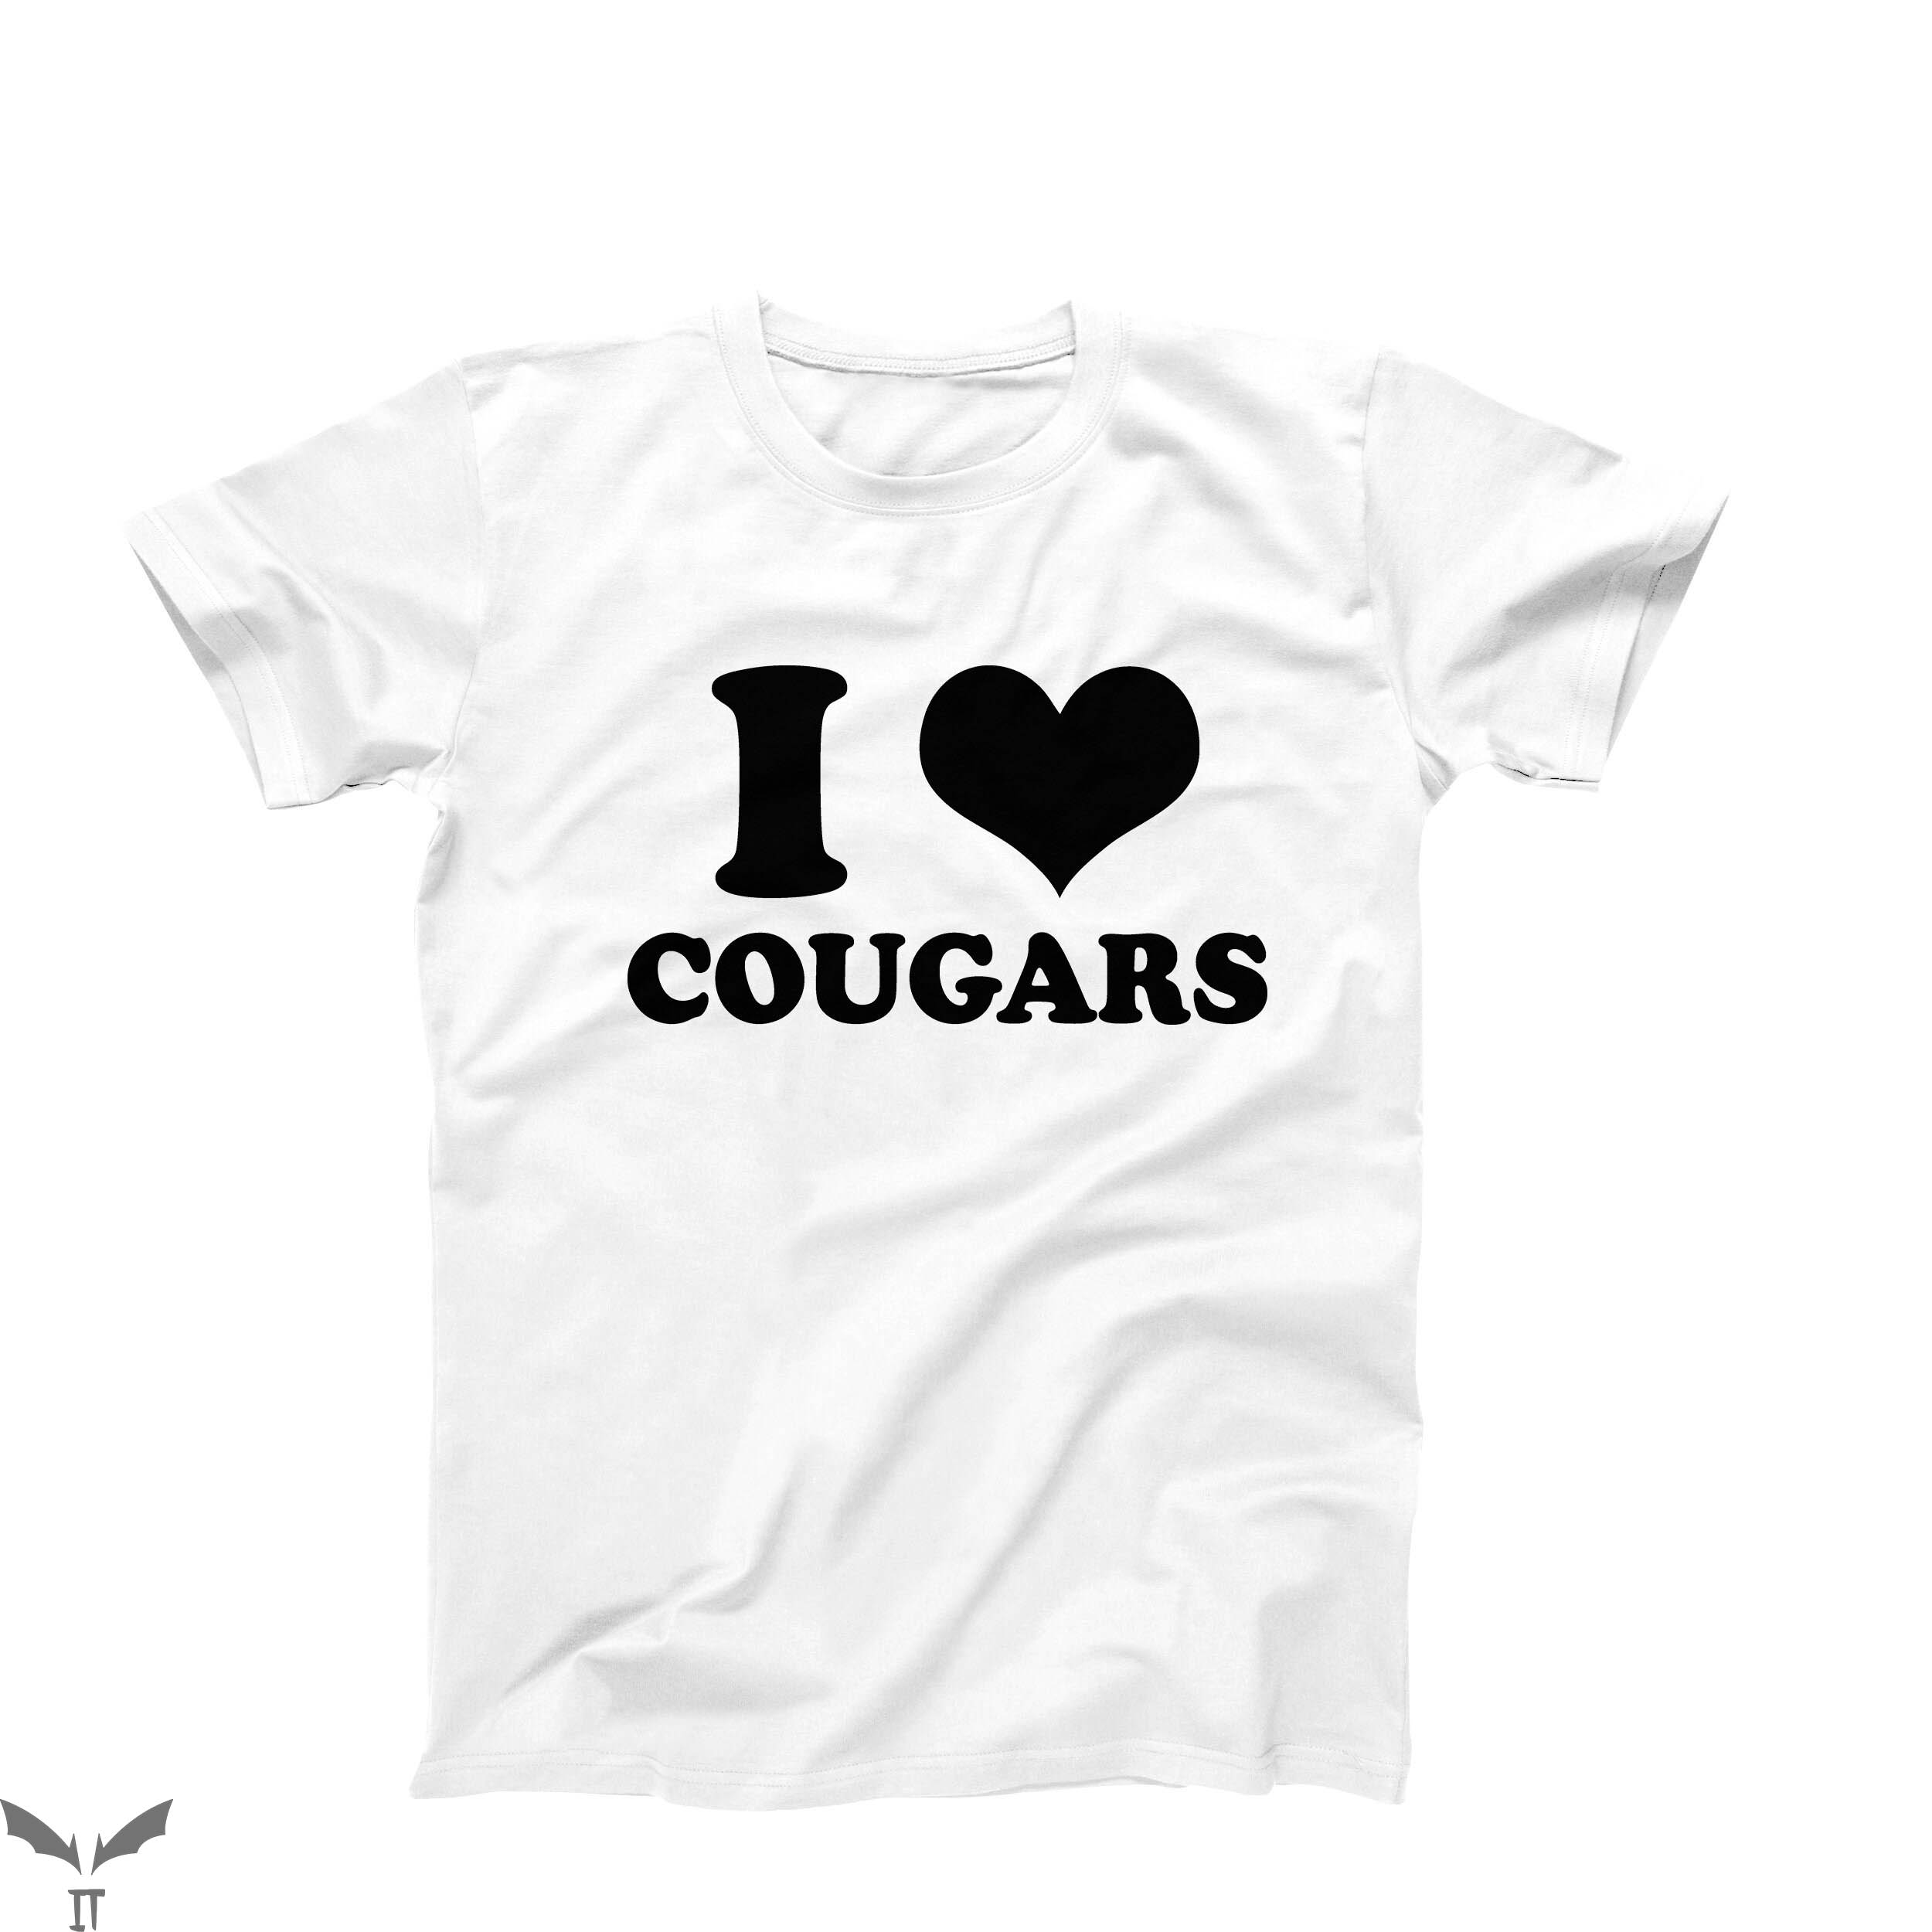 I Heart My BF T-Shirt I Love Cougars Funny Heart Tee Shirt